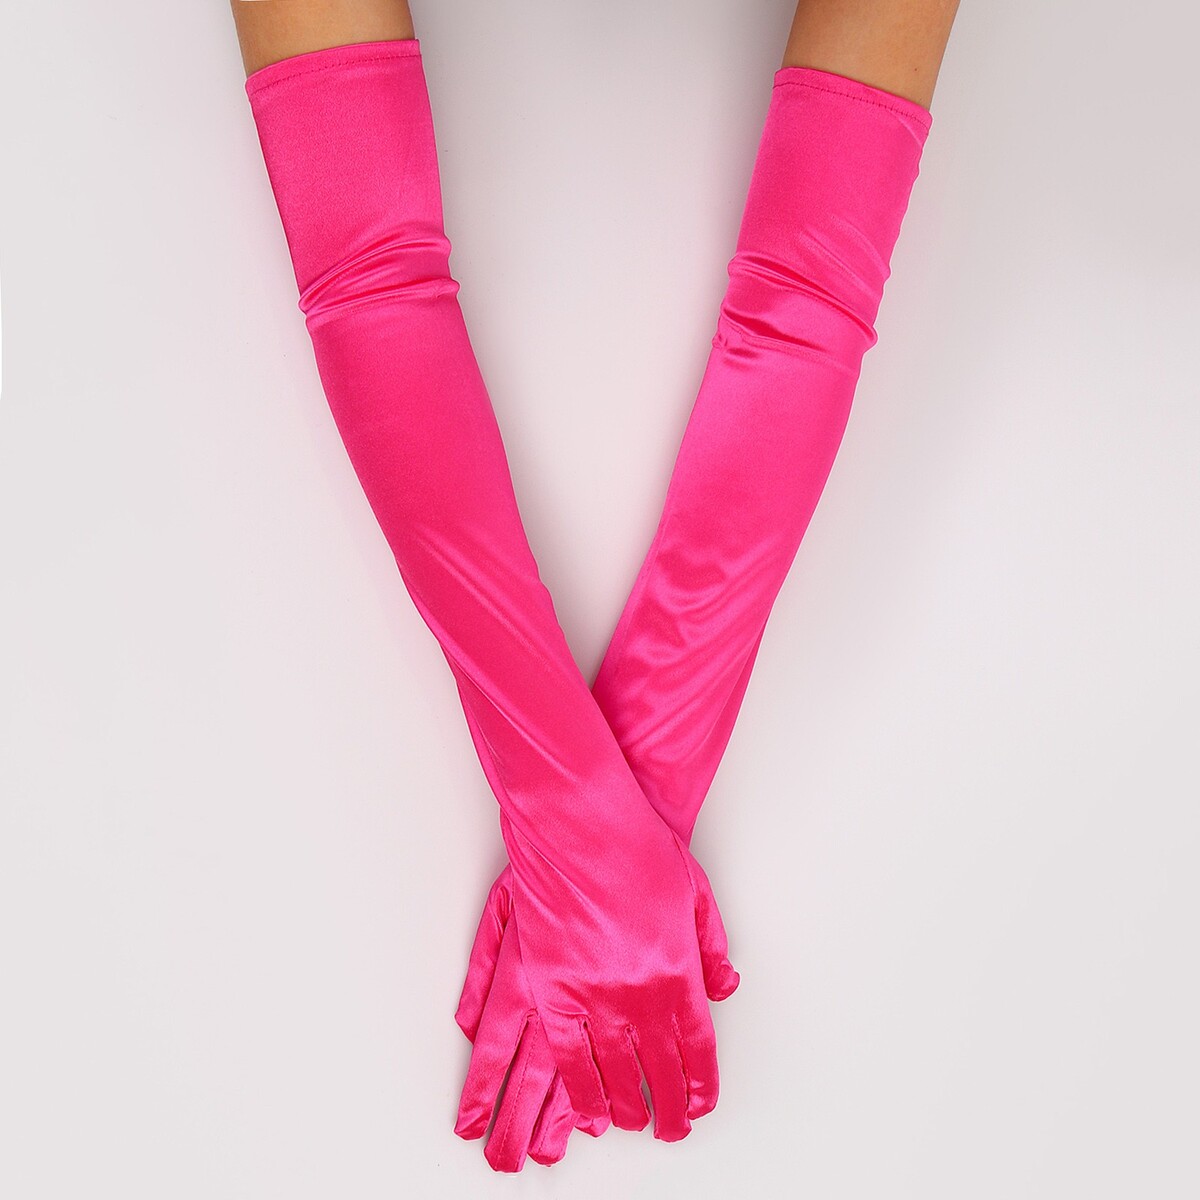 Карнавальный аксессуар - перчатки 55см, цвет фуксия карнавальный аксессуар перчатки с бахромой